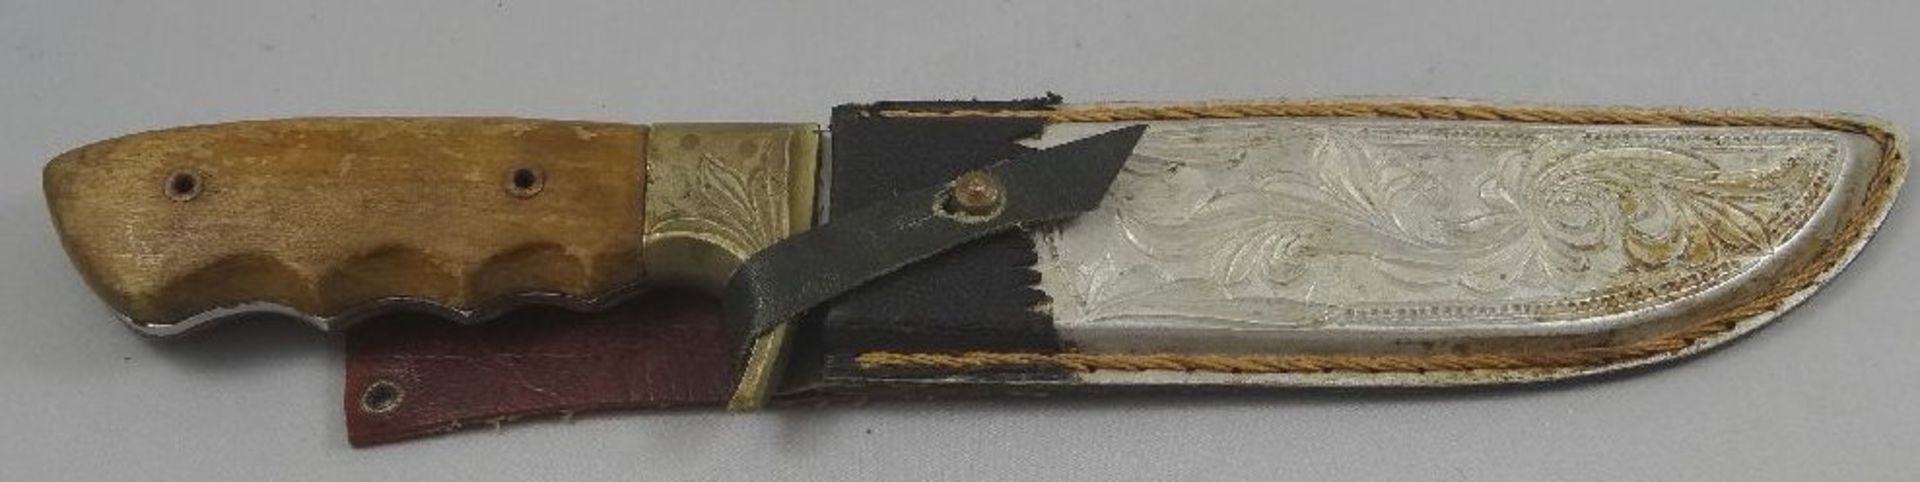 altes Jagdmesser "Aitor" Spain, Lederscheide, Holzgriff, Gebrauchsspuren, L-31,5 cm